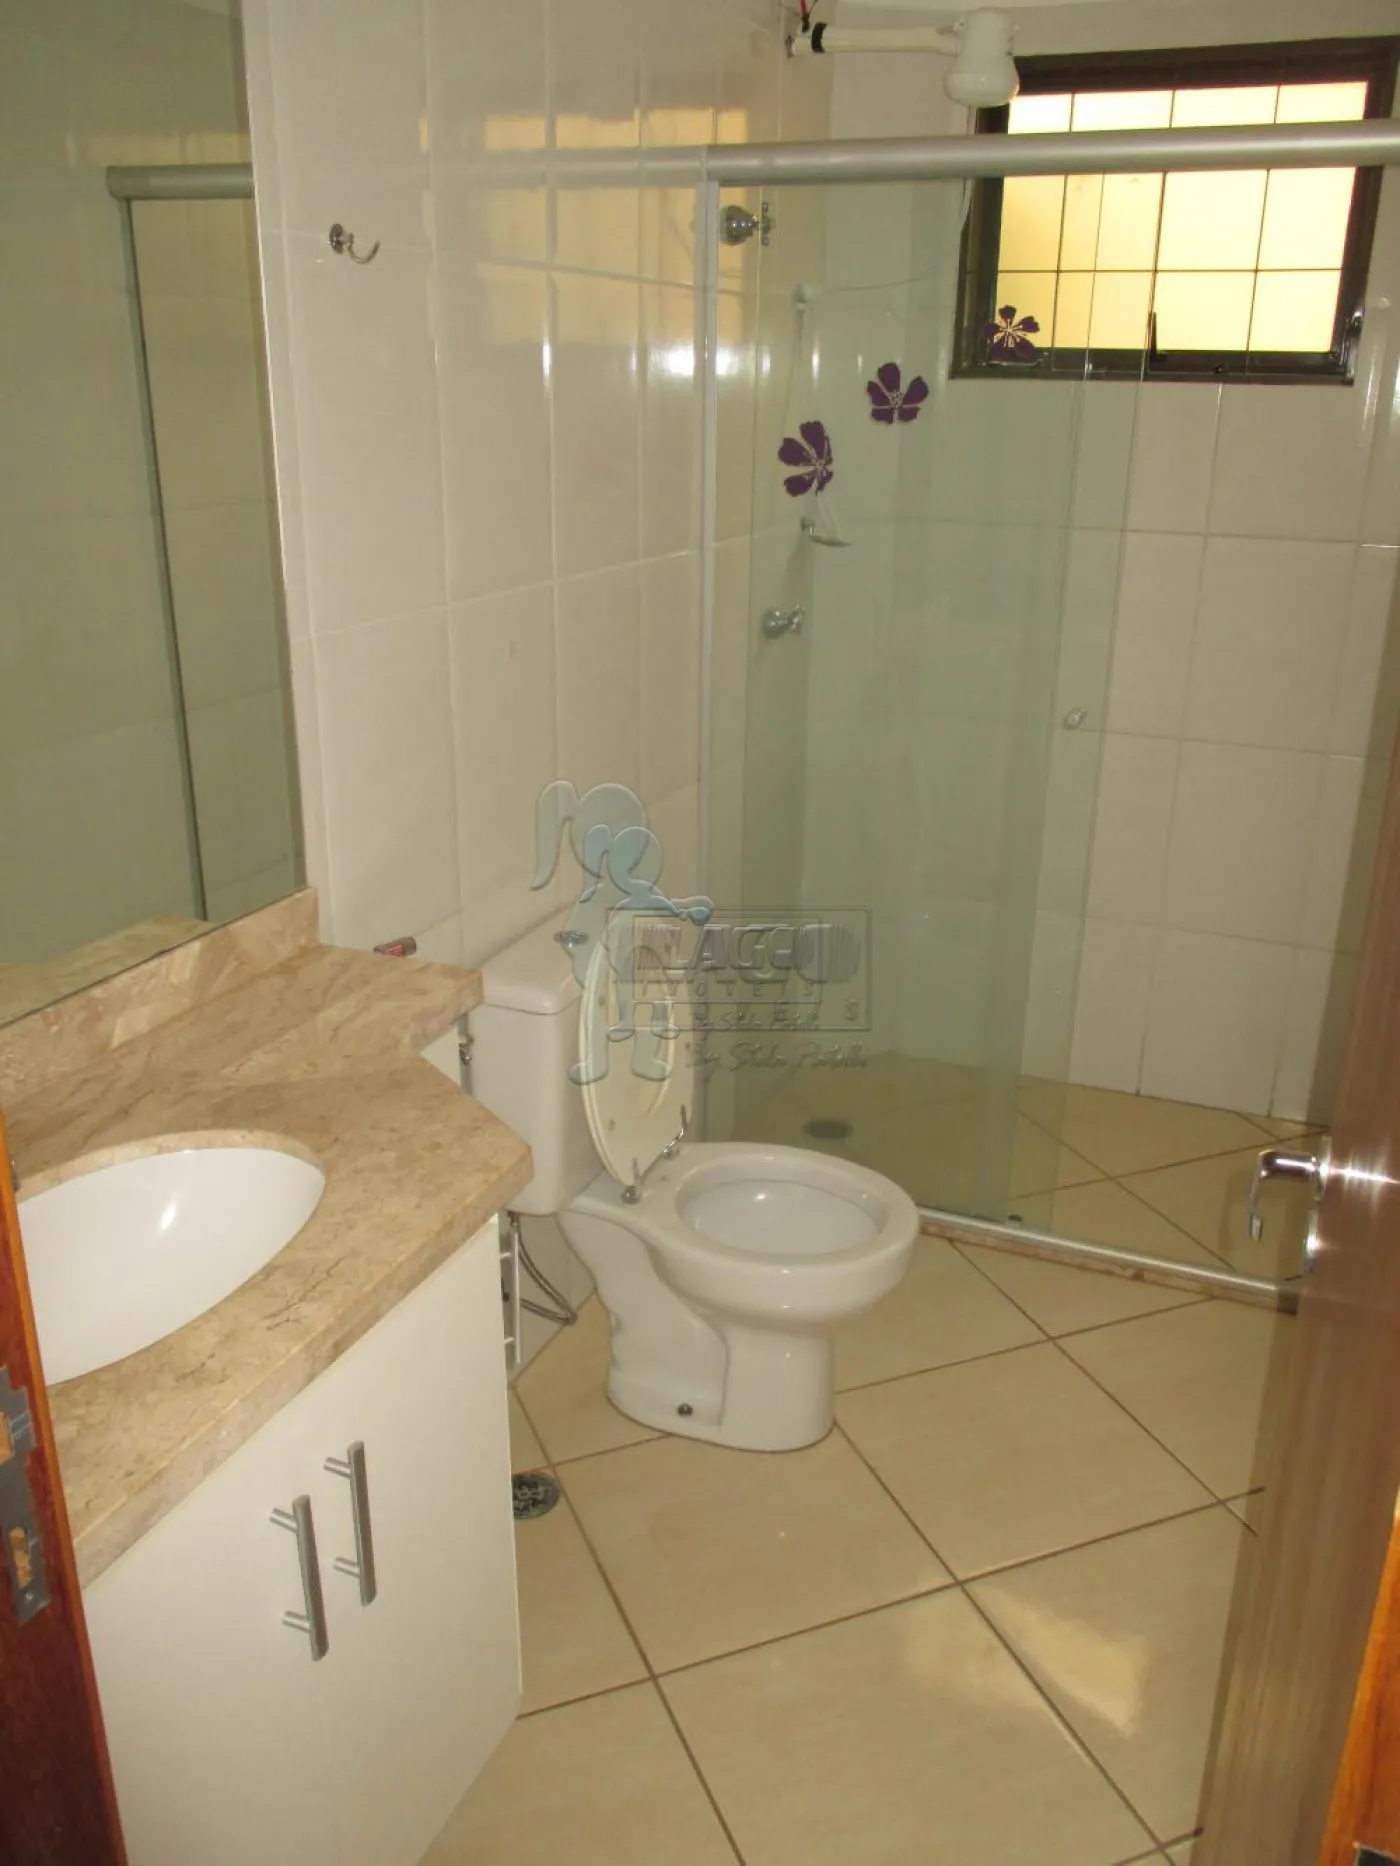 Alugar Apartamento / Padrão em Ribeirão Preto R$ 1.800,00 - Foto 8